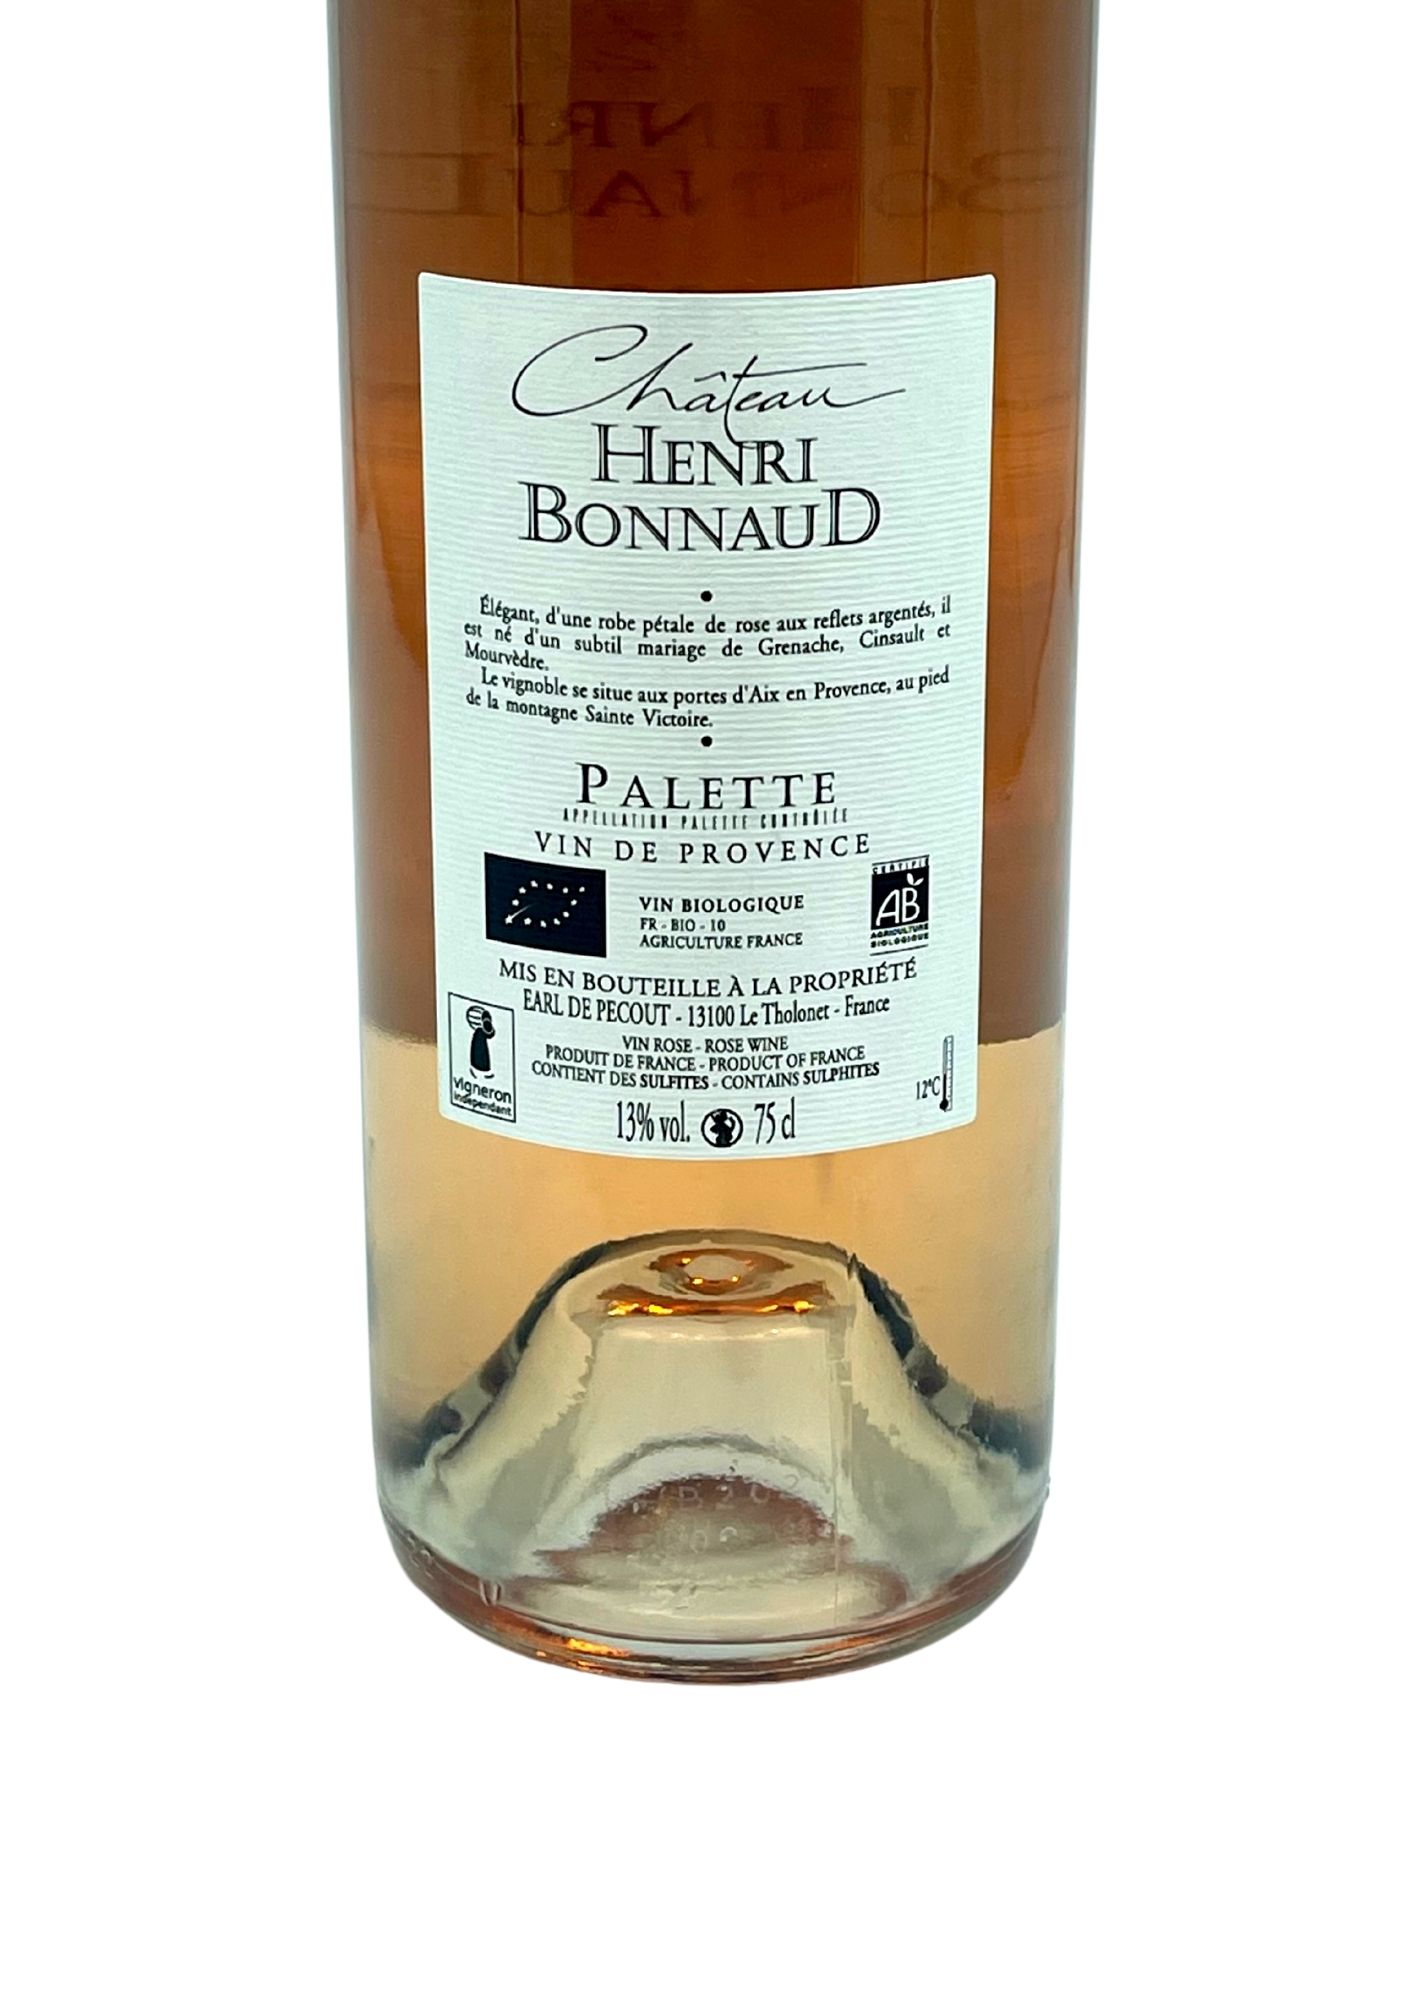 Palette - Château Henri Bonnaud Rosé